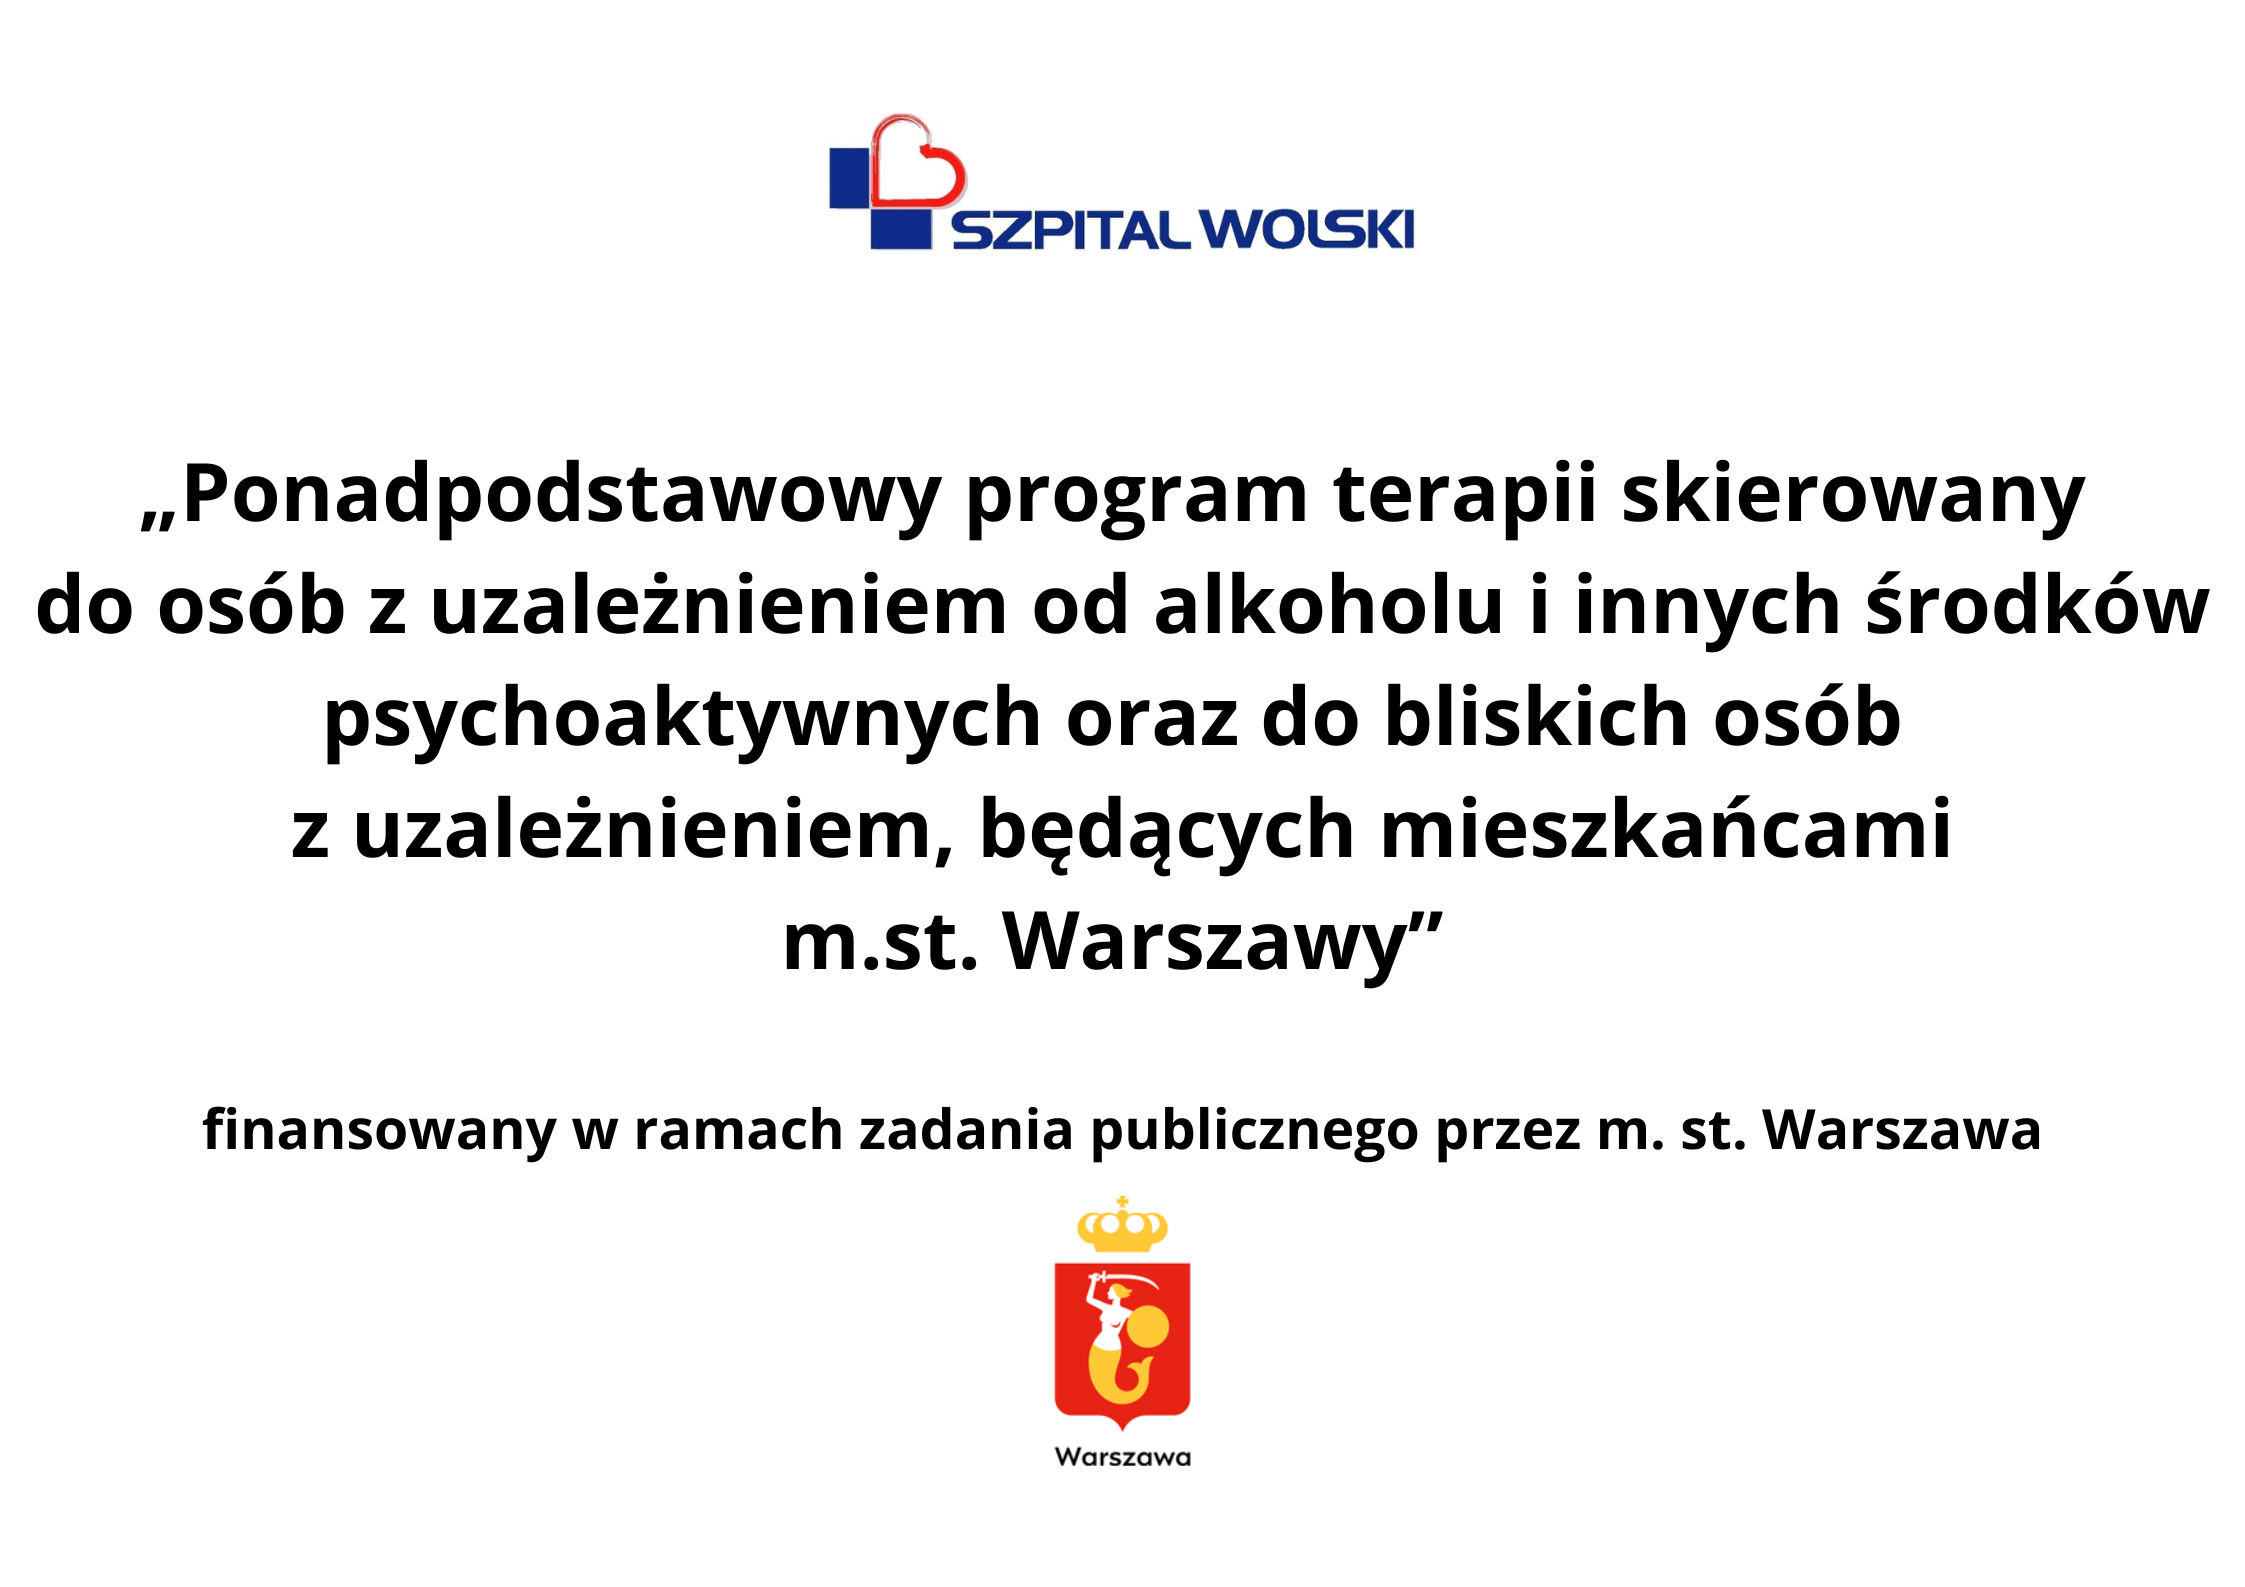 Ponadpodstawowy program terapii skierowany do osób z uzależnieniem od alkoholu i innych środków psychoaktywnych, oraz do bliskich osób z uzależnieniem, będących mieszkańcami m.st. Warszawy